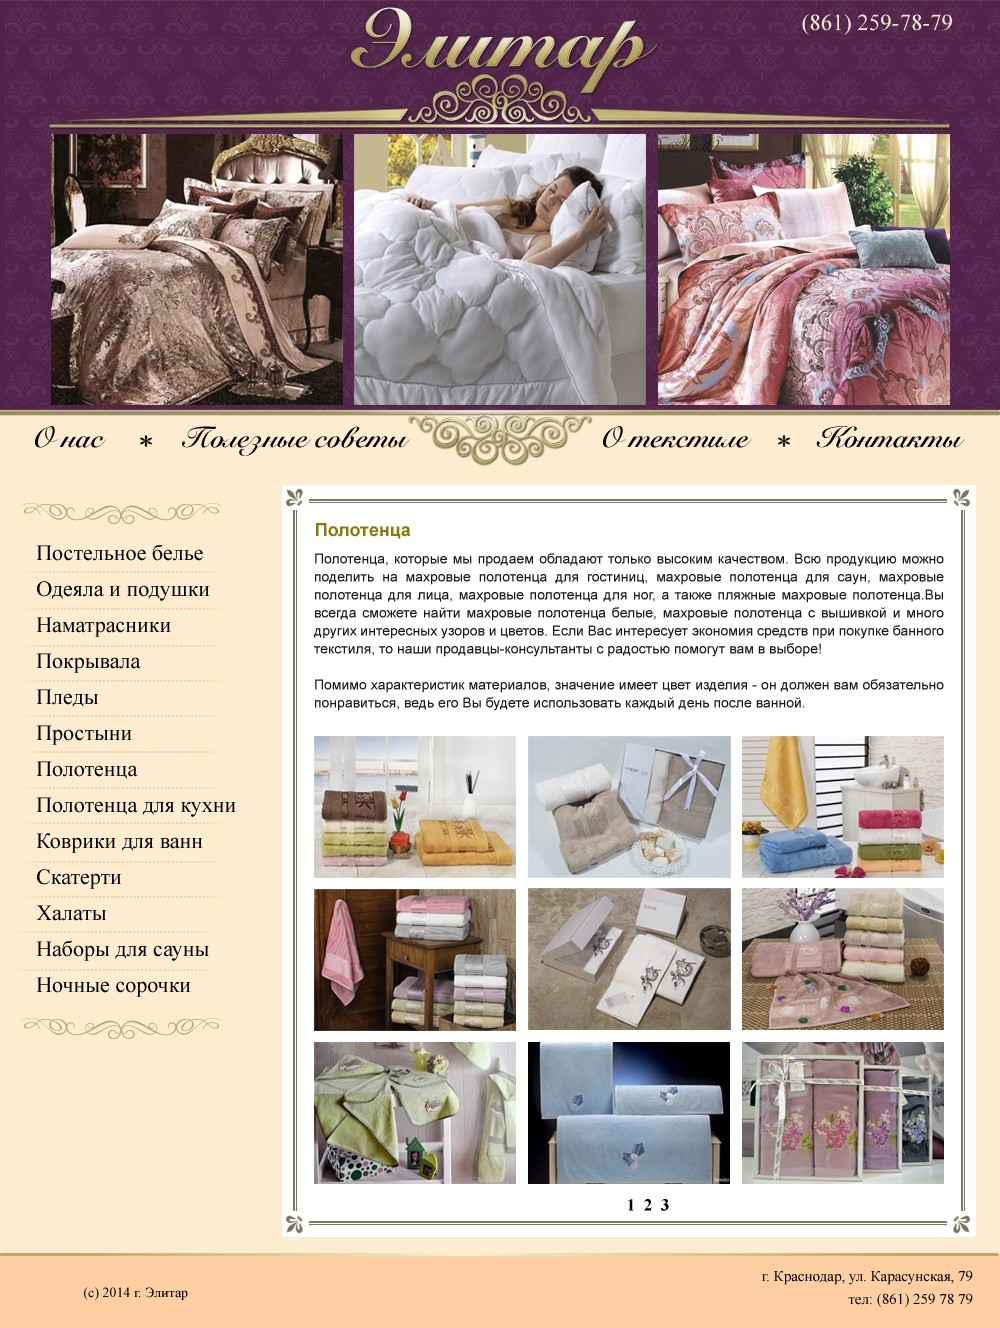 Создание сайта для магазина текстиля